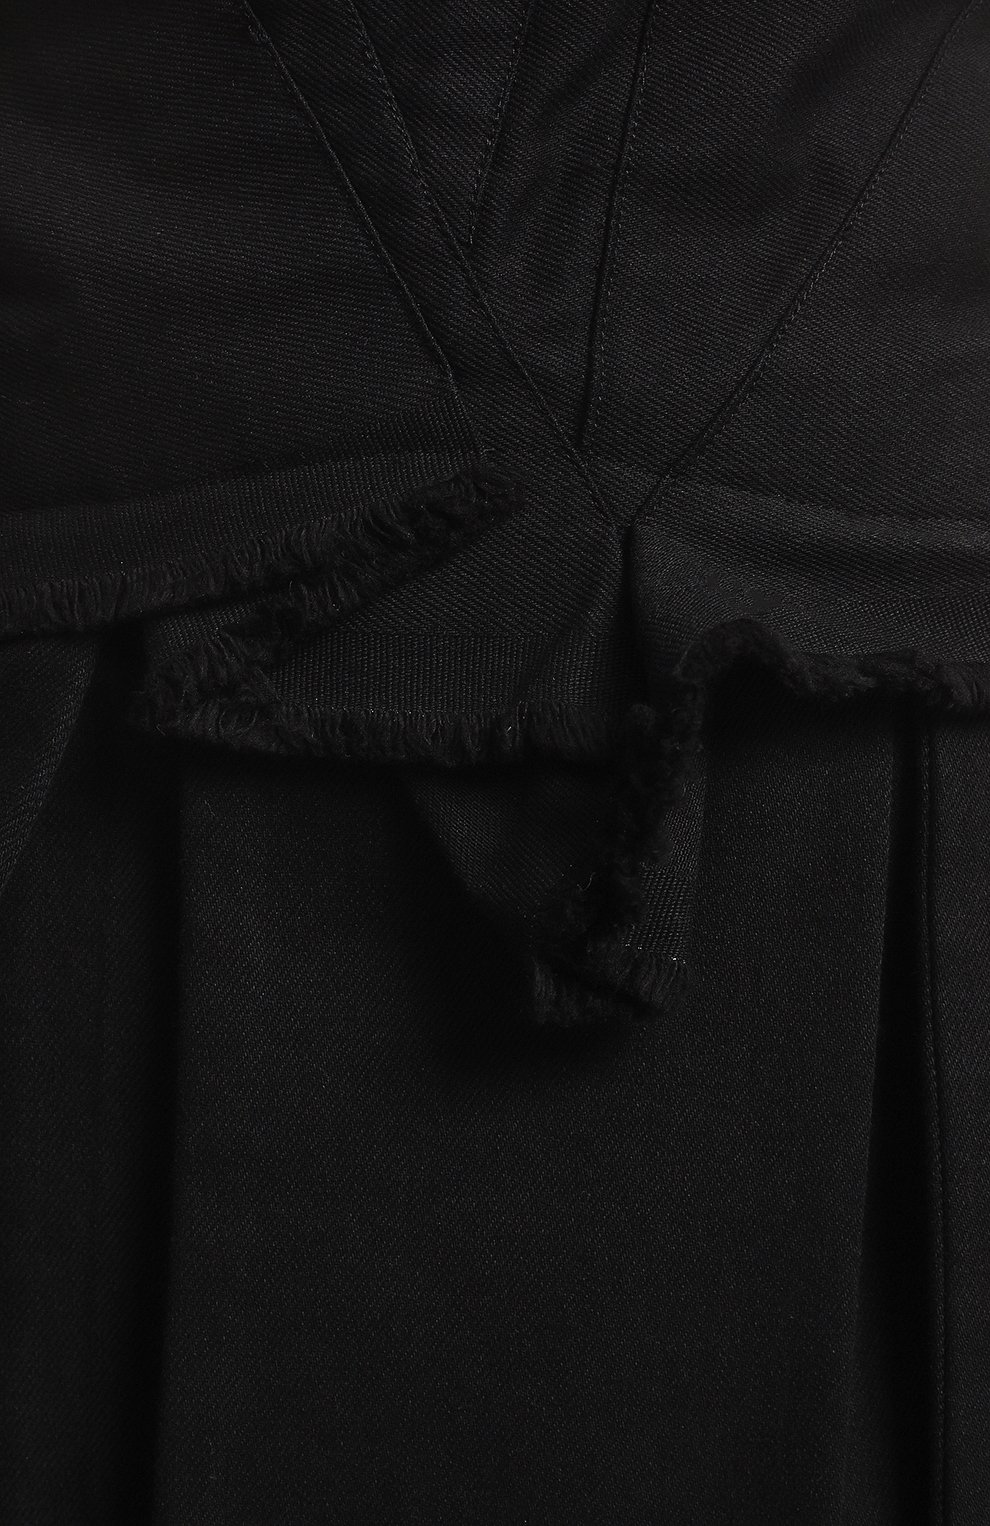 Джинсовое платье | Isabel Benenato | Чёрный - 3